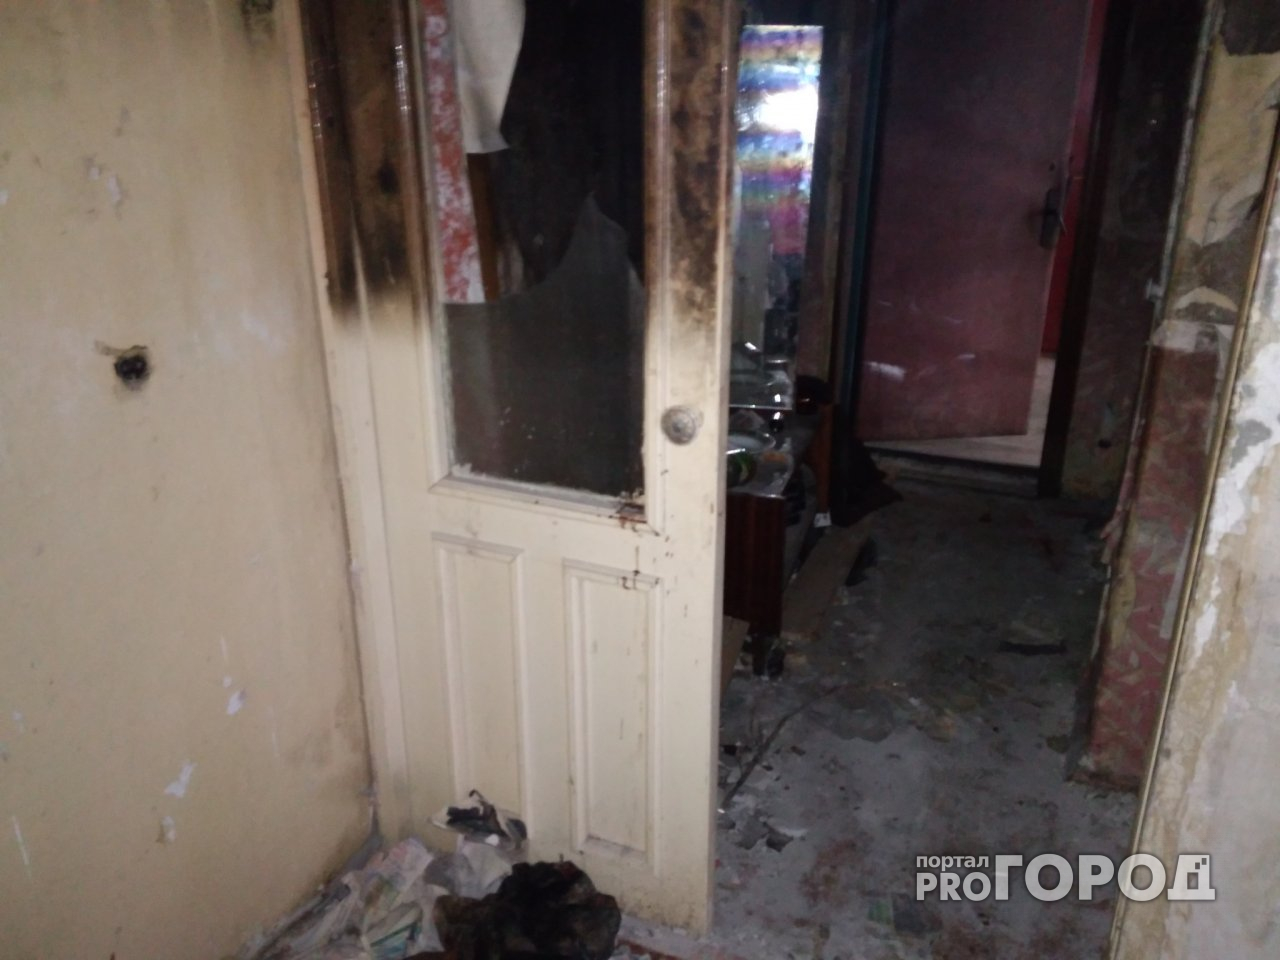 Соседка йошкаролинца, умирающего в своей квартире: «Ходят к нему всякие, мусорят»